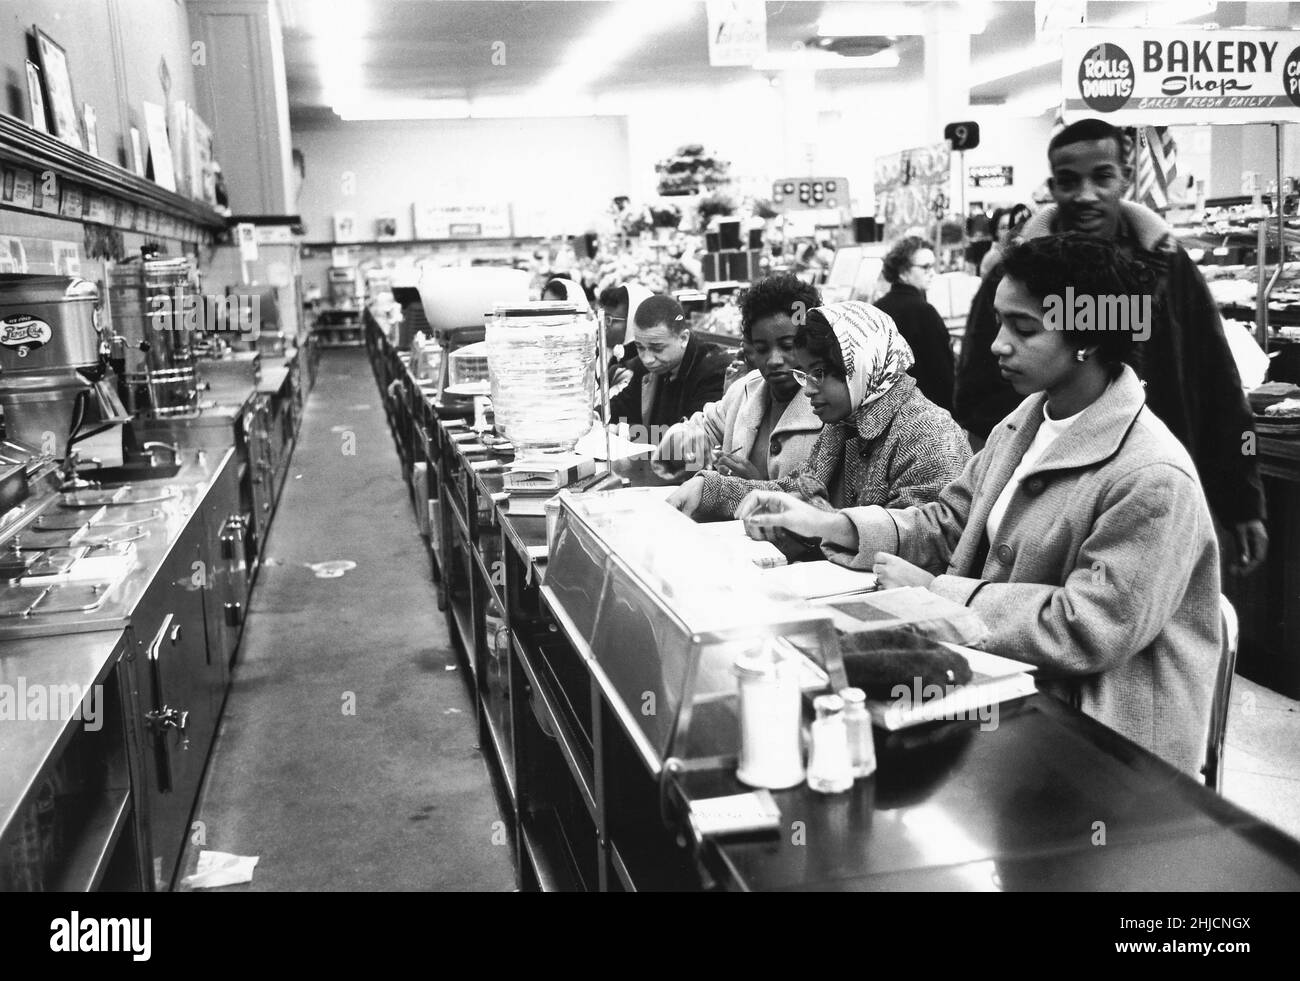 9 février 1960, Charlotte, Caroline du Nord. Les étudiants avaient dit au chef de police ce qu'ils allaient faire à l'avance. Le chef de la police avait promis de ne pas procéder à des arrestations s'ils le faisaient de manière ordonnée et il a gardé sa parole; aucune police n'a jamais comparu devant les sit-ins de Charlotte et il n'y a pas eu d'arrestations. Après quelques heures, les étudiants sont partis et les magasins ont mis des affiches indiquant que leurs comptoirs de repas étaient temporairement fermés. Sur 3 juillet, les comptoirs de Woolworth ont été rouverts à tout le monde. Banque D'Images